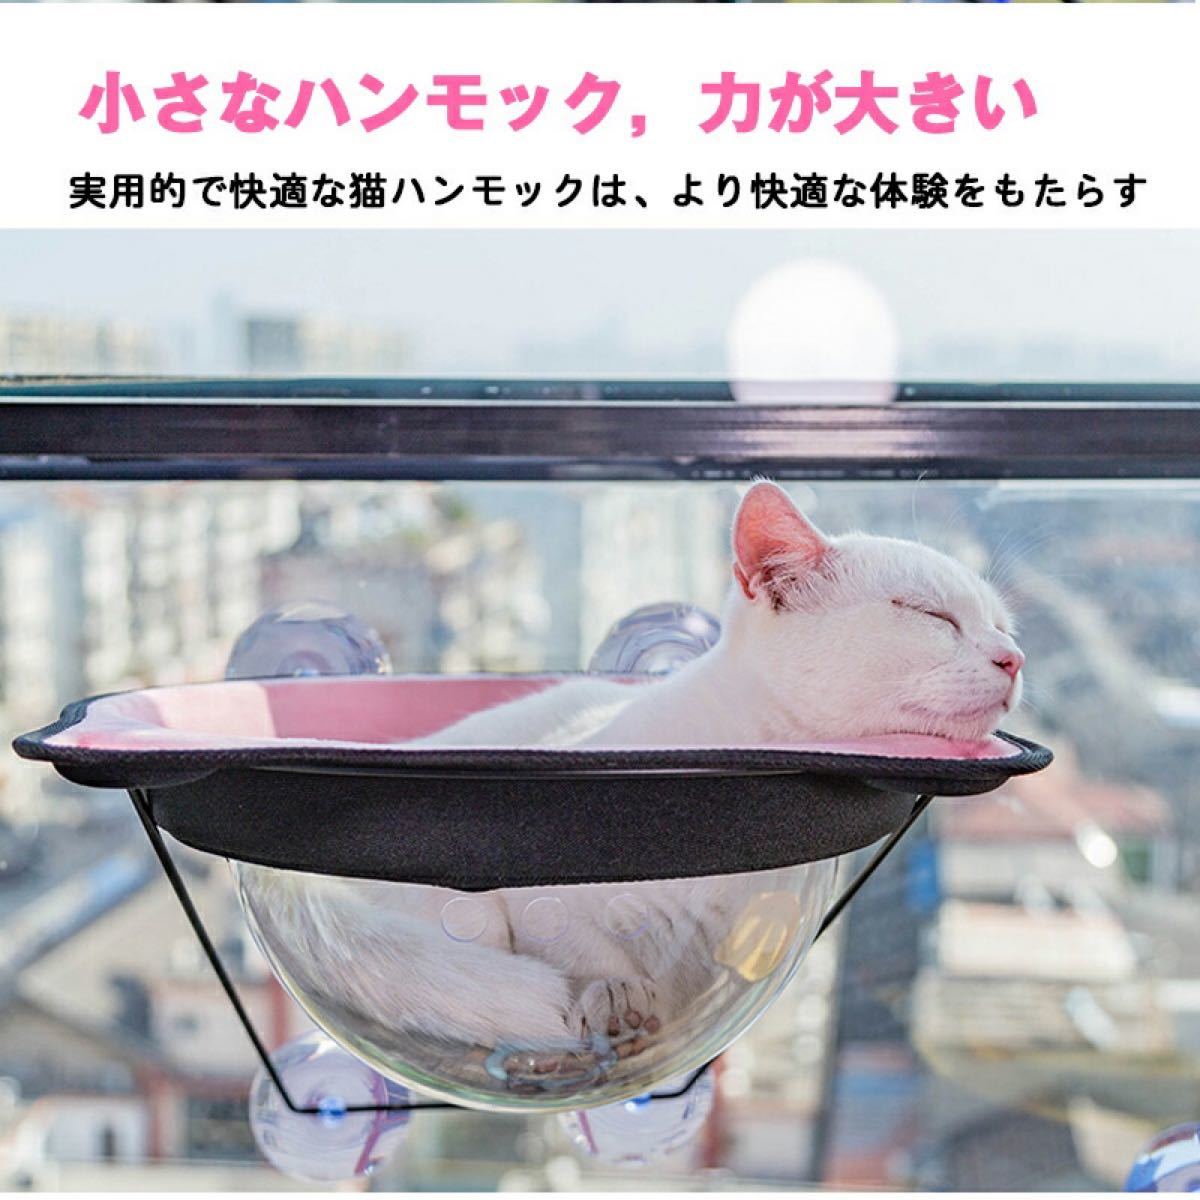 猫窓 ペット窓猫 ペット 窓 ハンモック ウィンドウベッド ペットグッズ ねこハンモック ペット用 猫用 猫の窓 耐荷重15KG